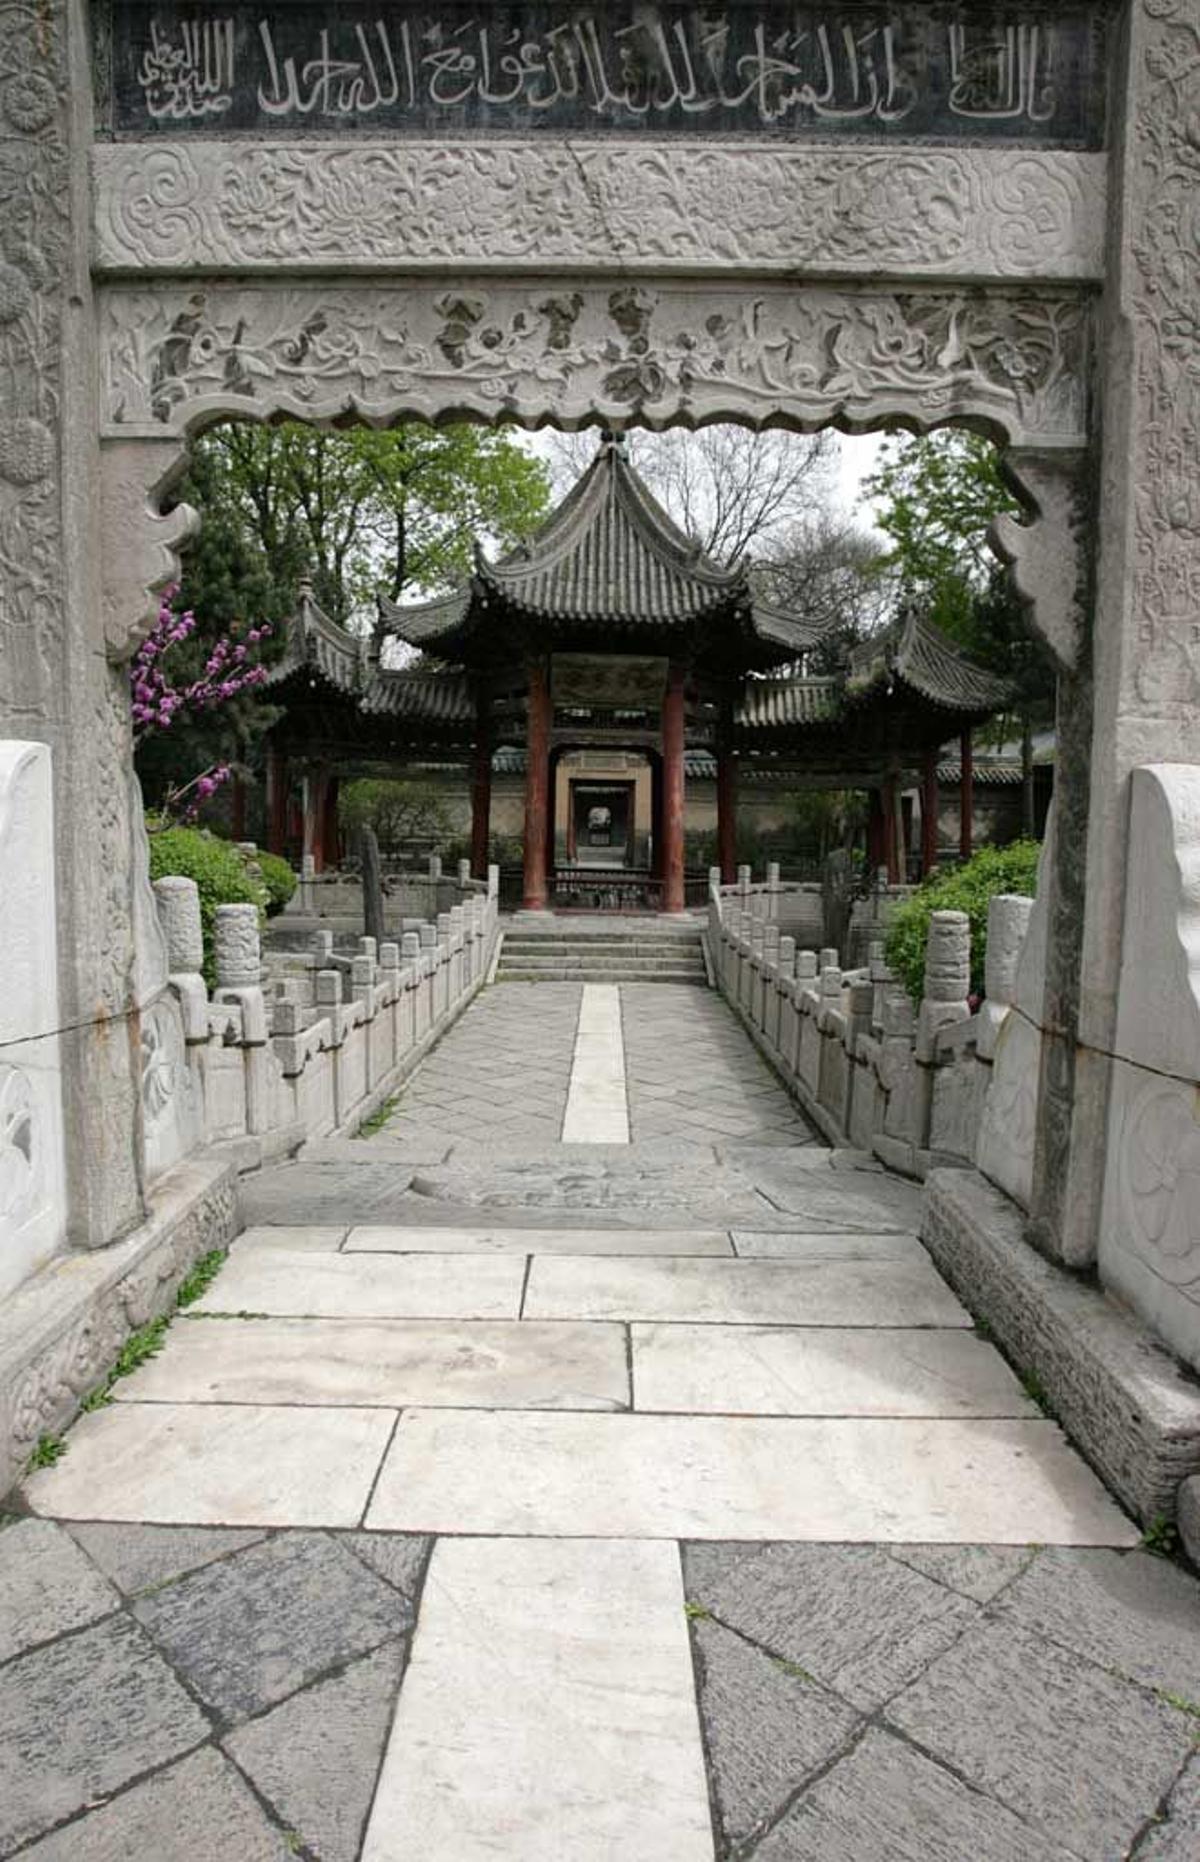 Mezquita de Xi'an fue construida durante la dinastía Tang